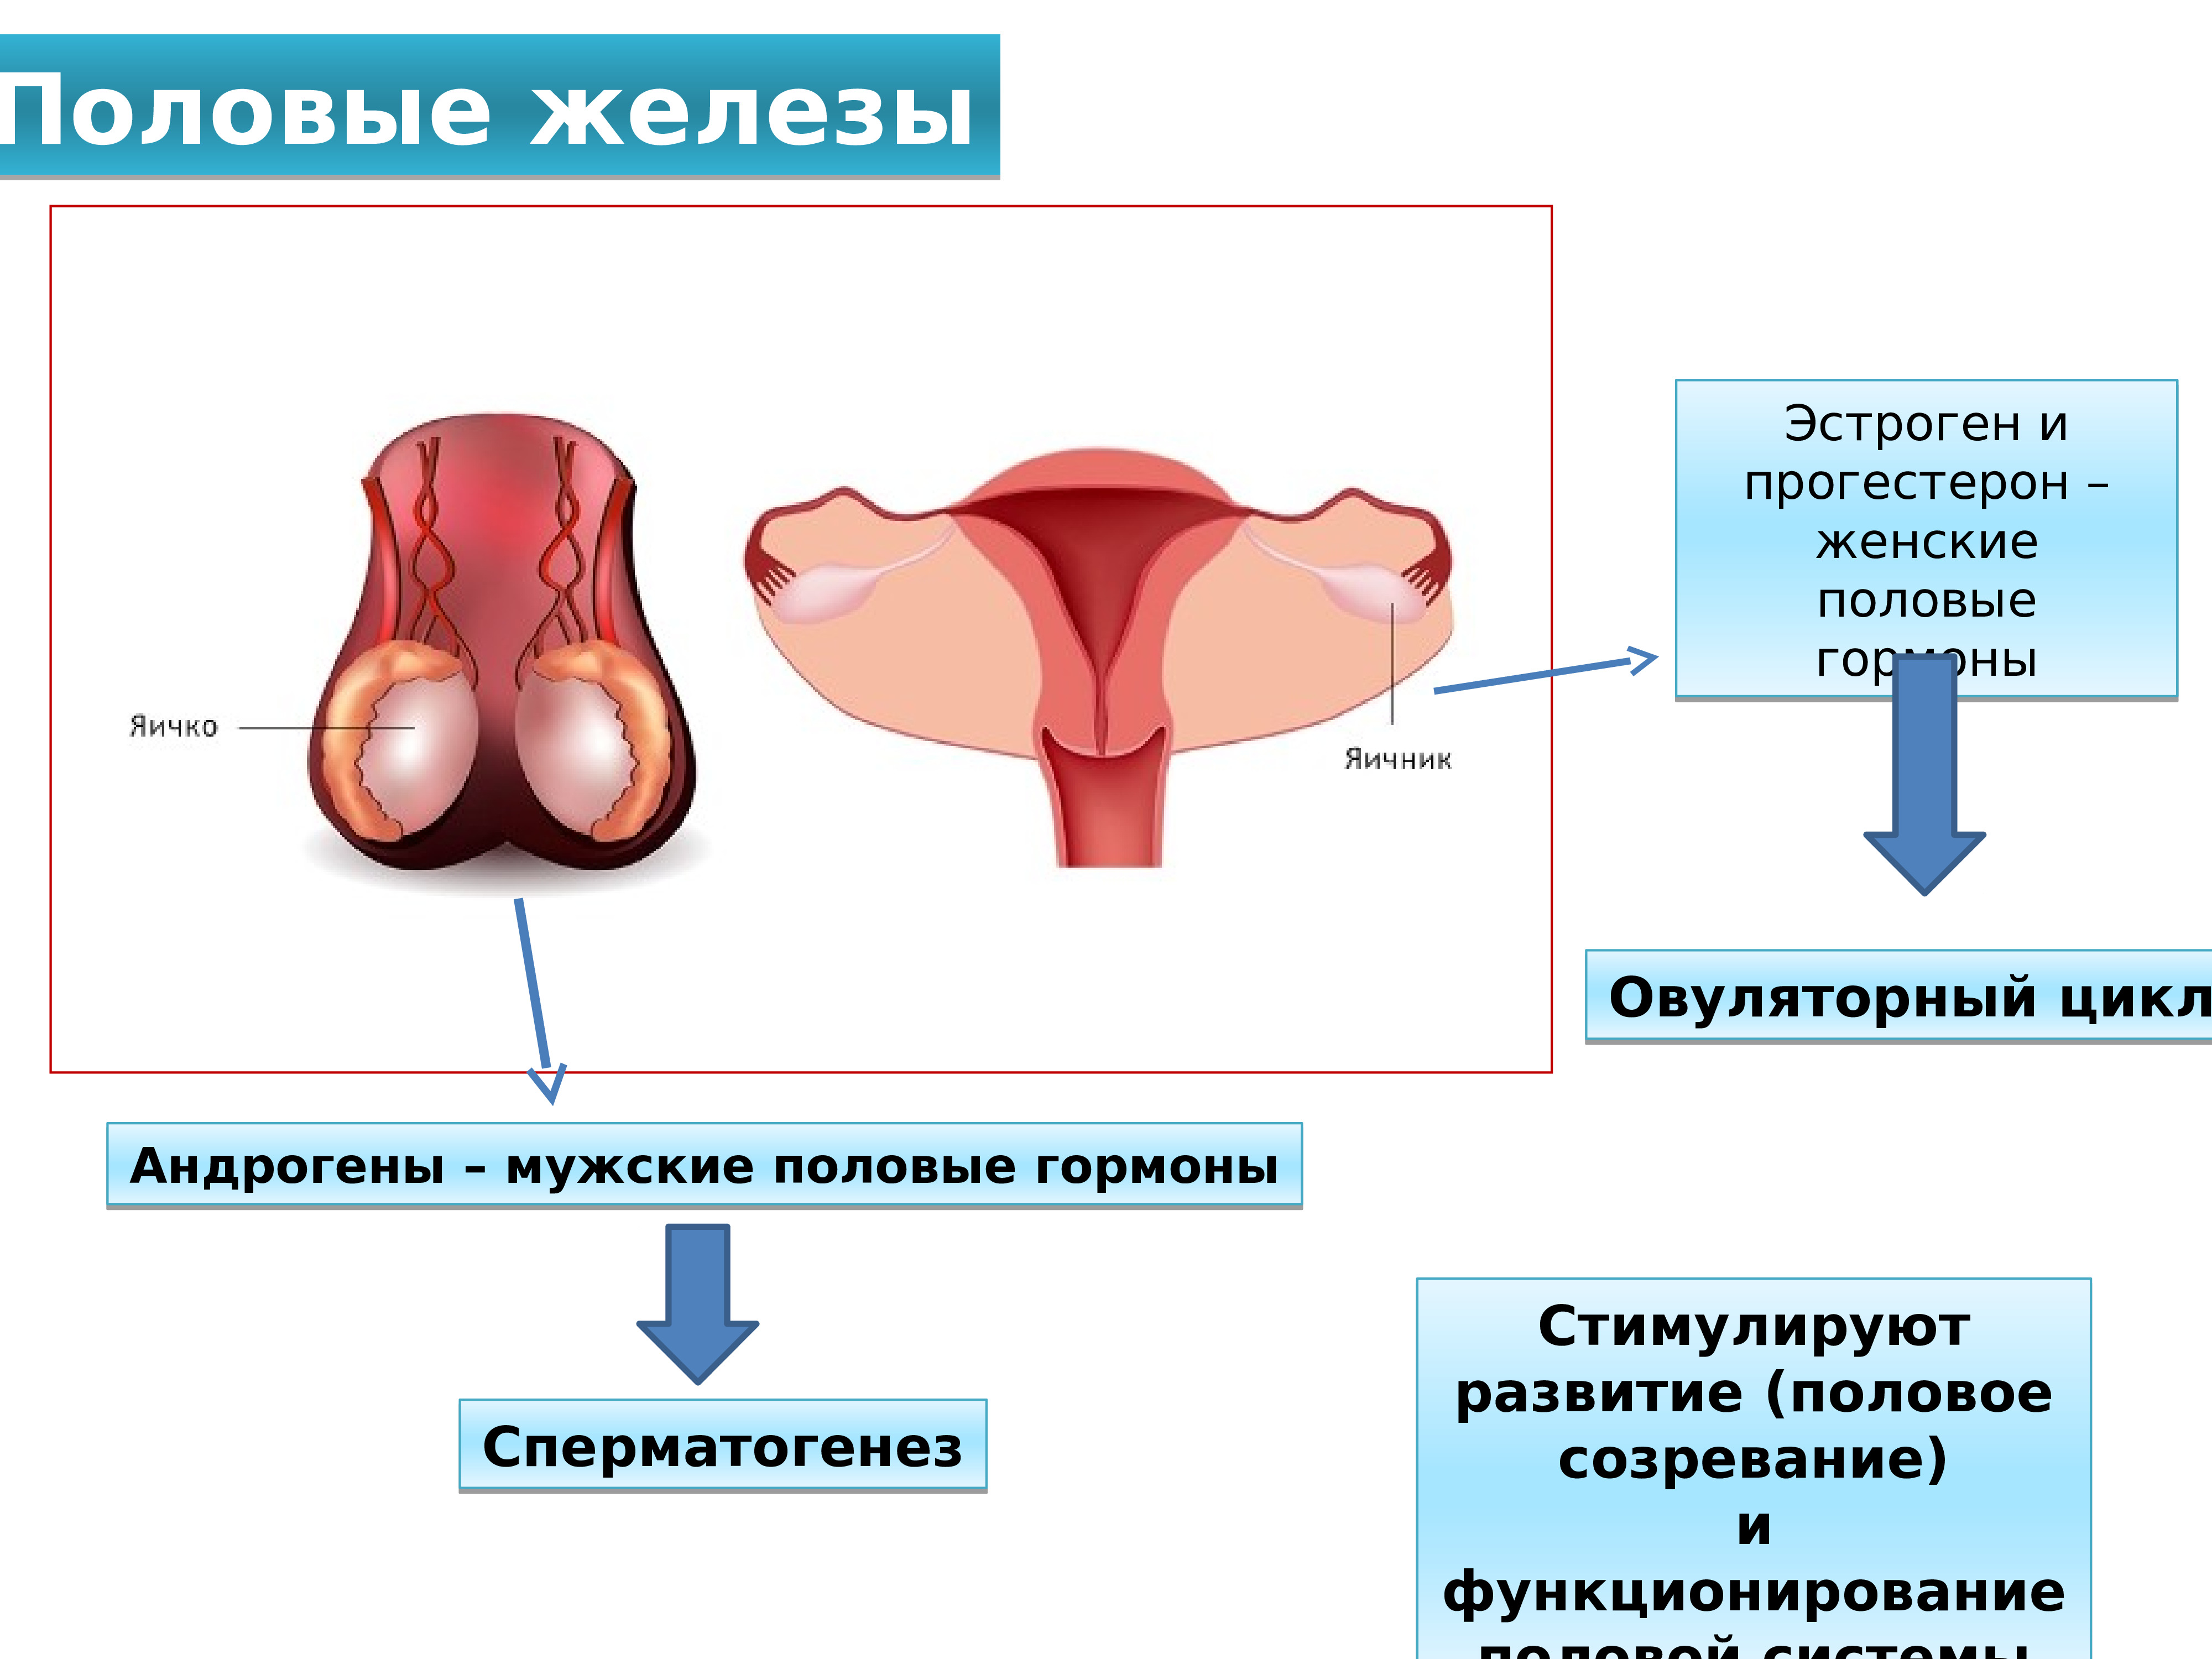 4 женская половая железа. Регулируемые процессы жизнедеятельности половые железы. Половые железы гормоны. Мужские и женские половые железы. Женские половые железы.